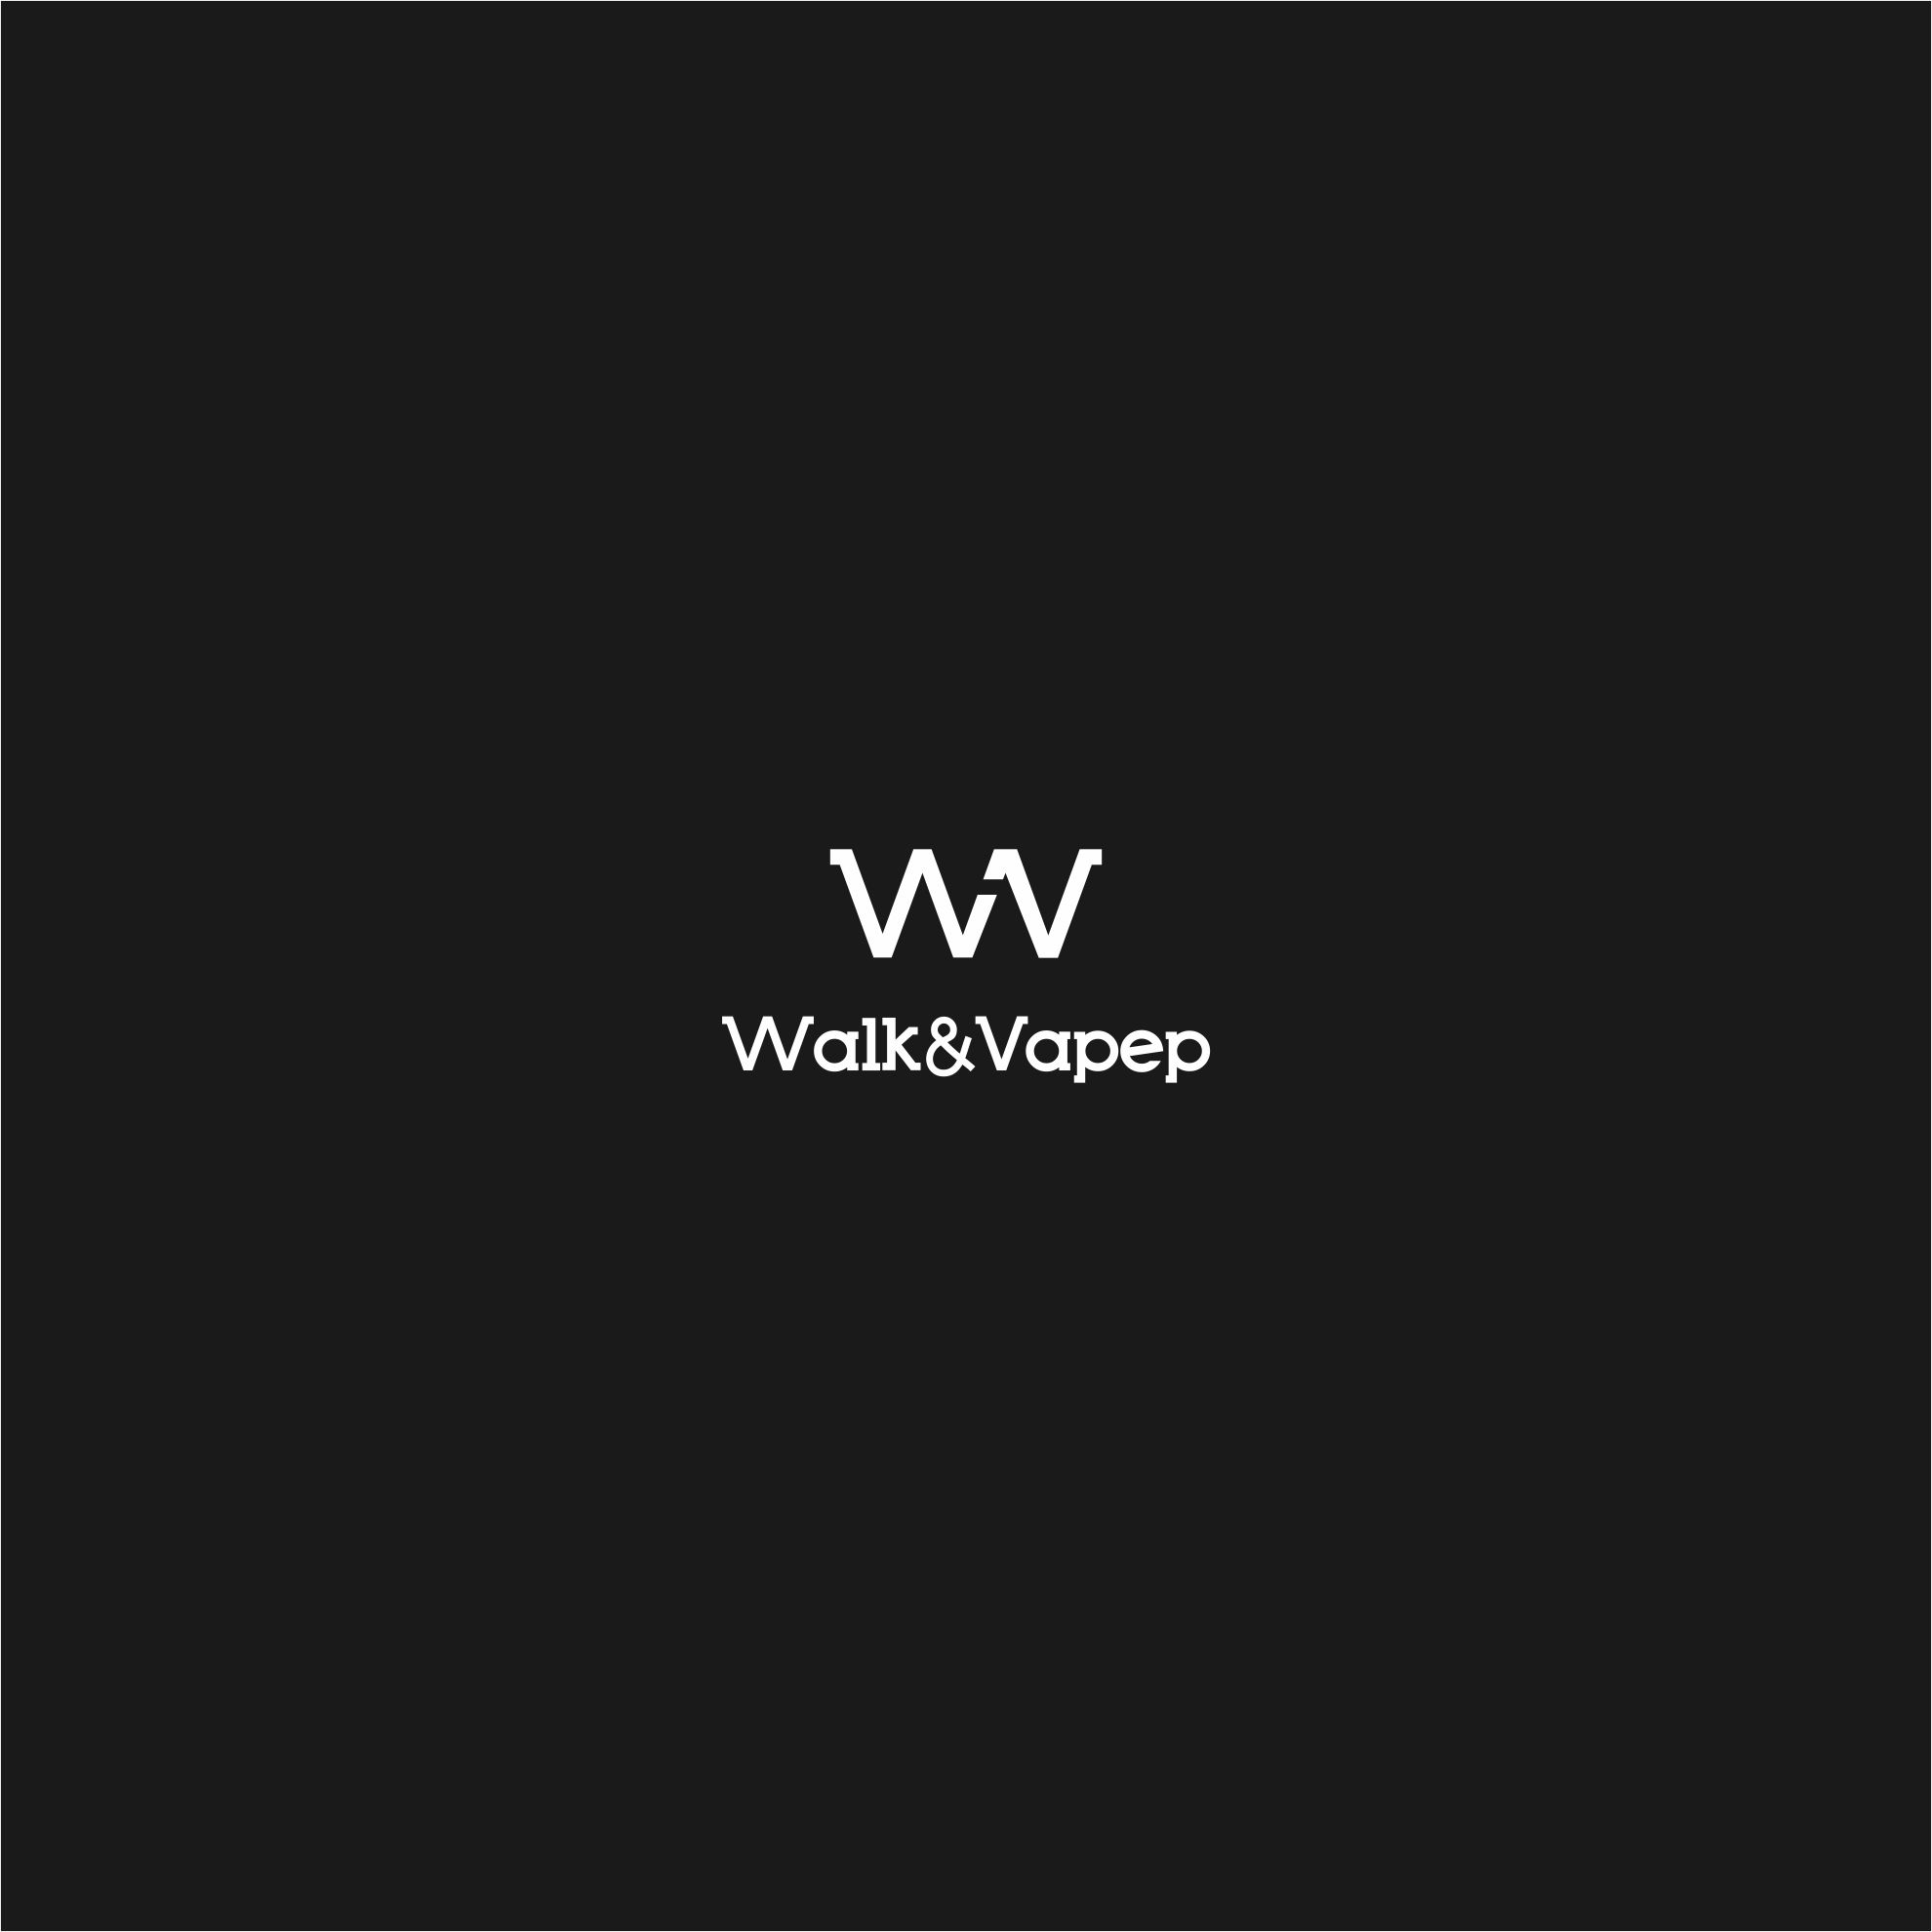 Логотип для Walk&Vape - дизайнер serz4868